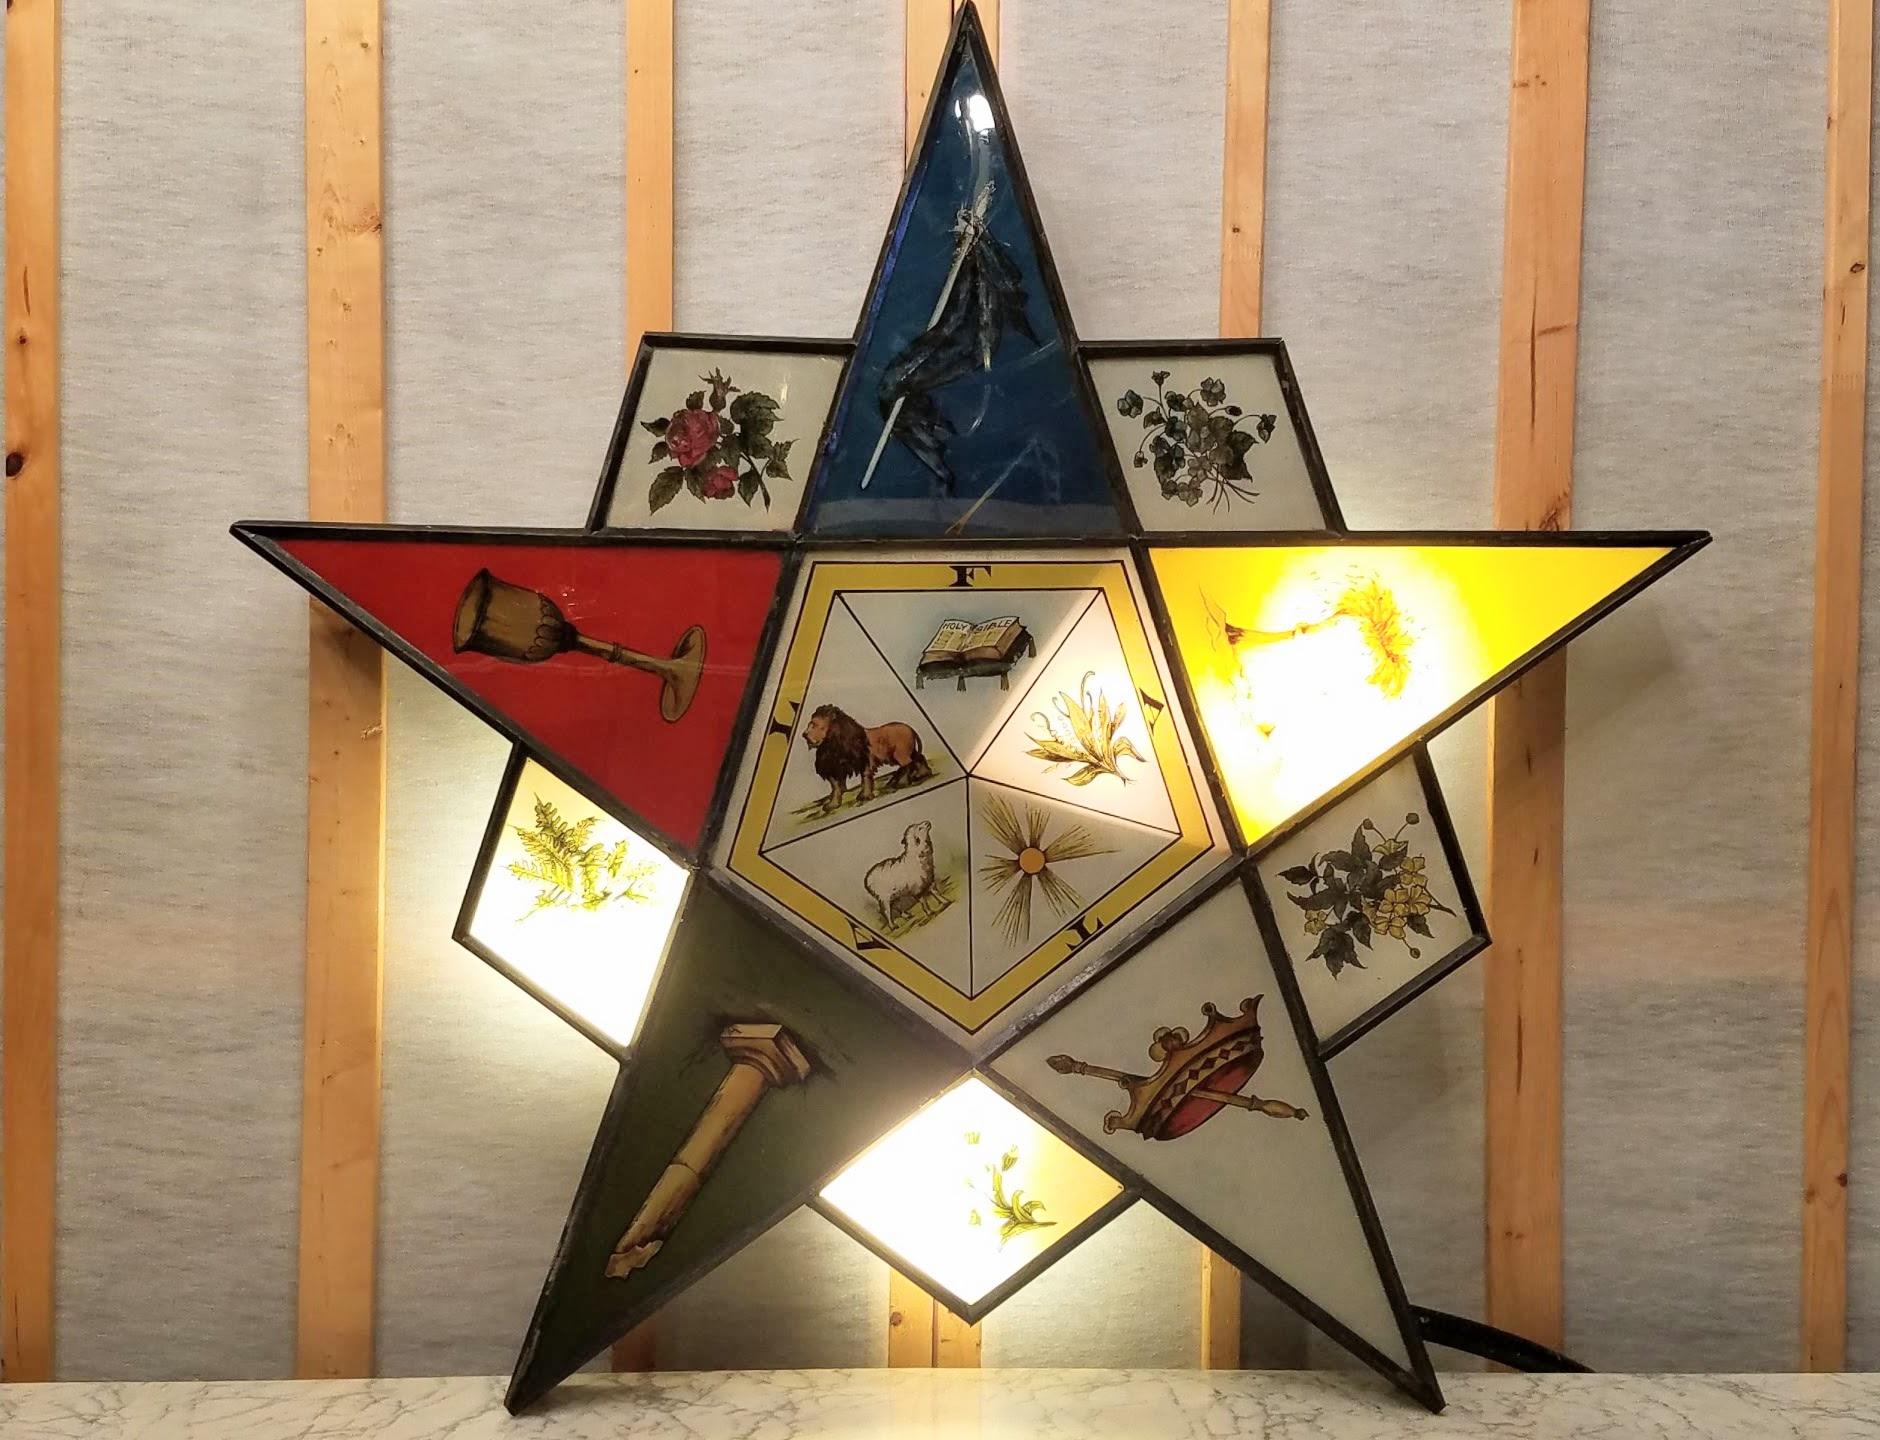 Beleuchtetes Blechschild mit Hinterglasmalerei für den Eastern Star of the Masonic Temple aus den 1920er Jahren.
Das Schild ist auf seinem originalen Metallrohrstativ montiert, das auf Holzrädern rollt und unmontiert an der Wand hängen kann.
Das